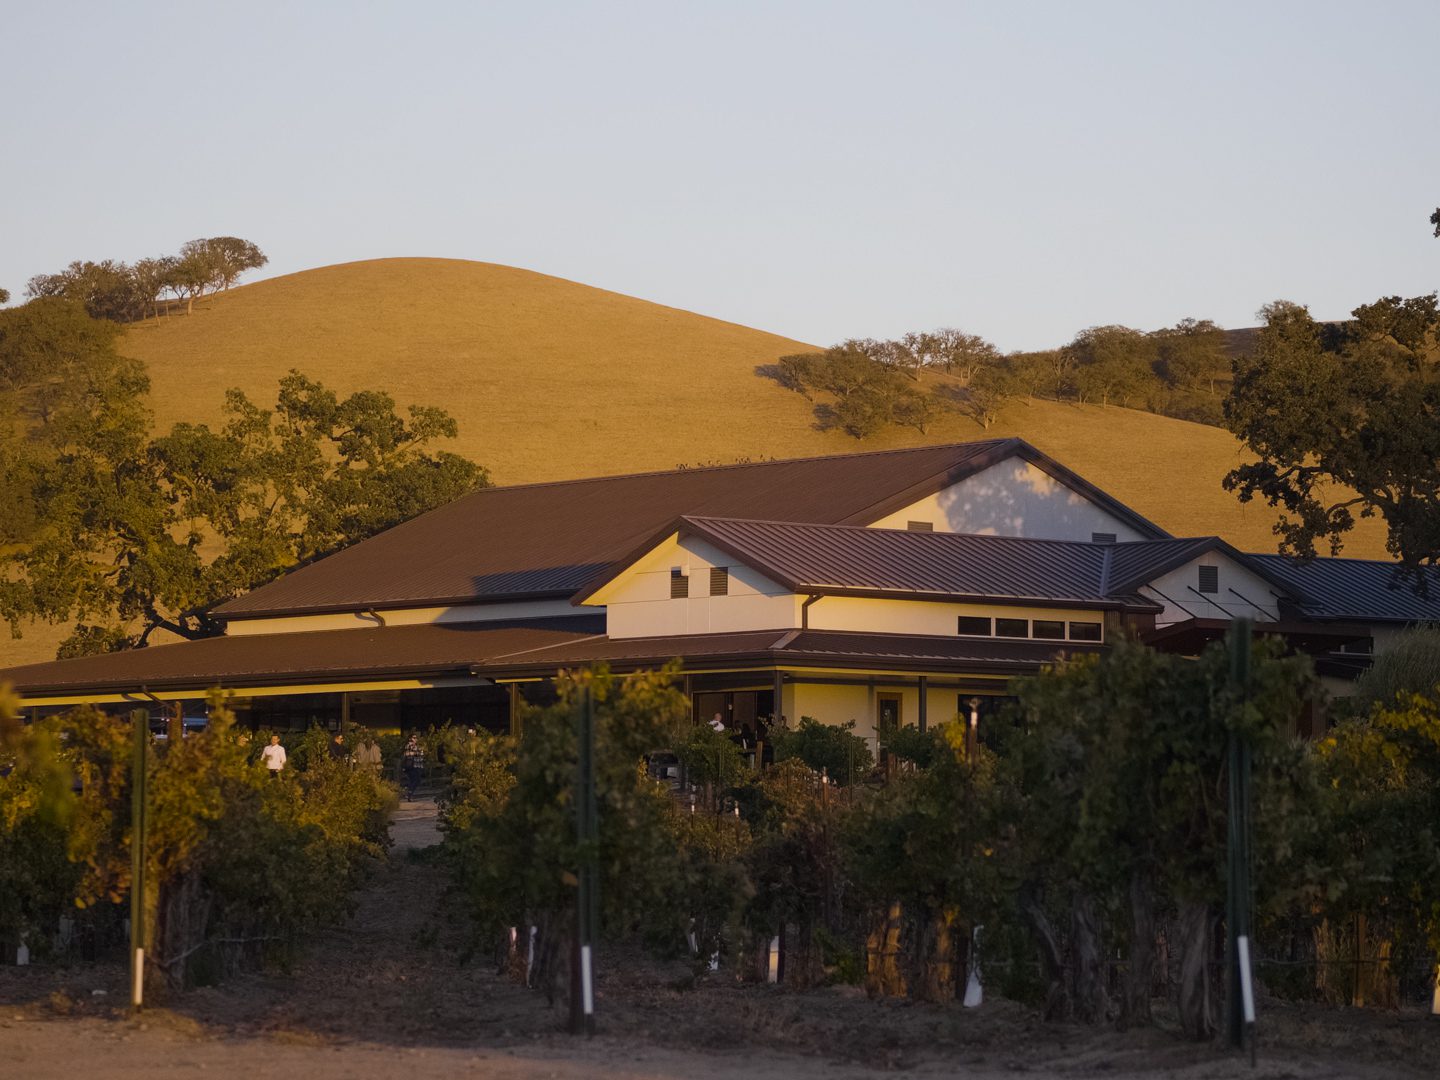 CASS winery in San Luis Obispo